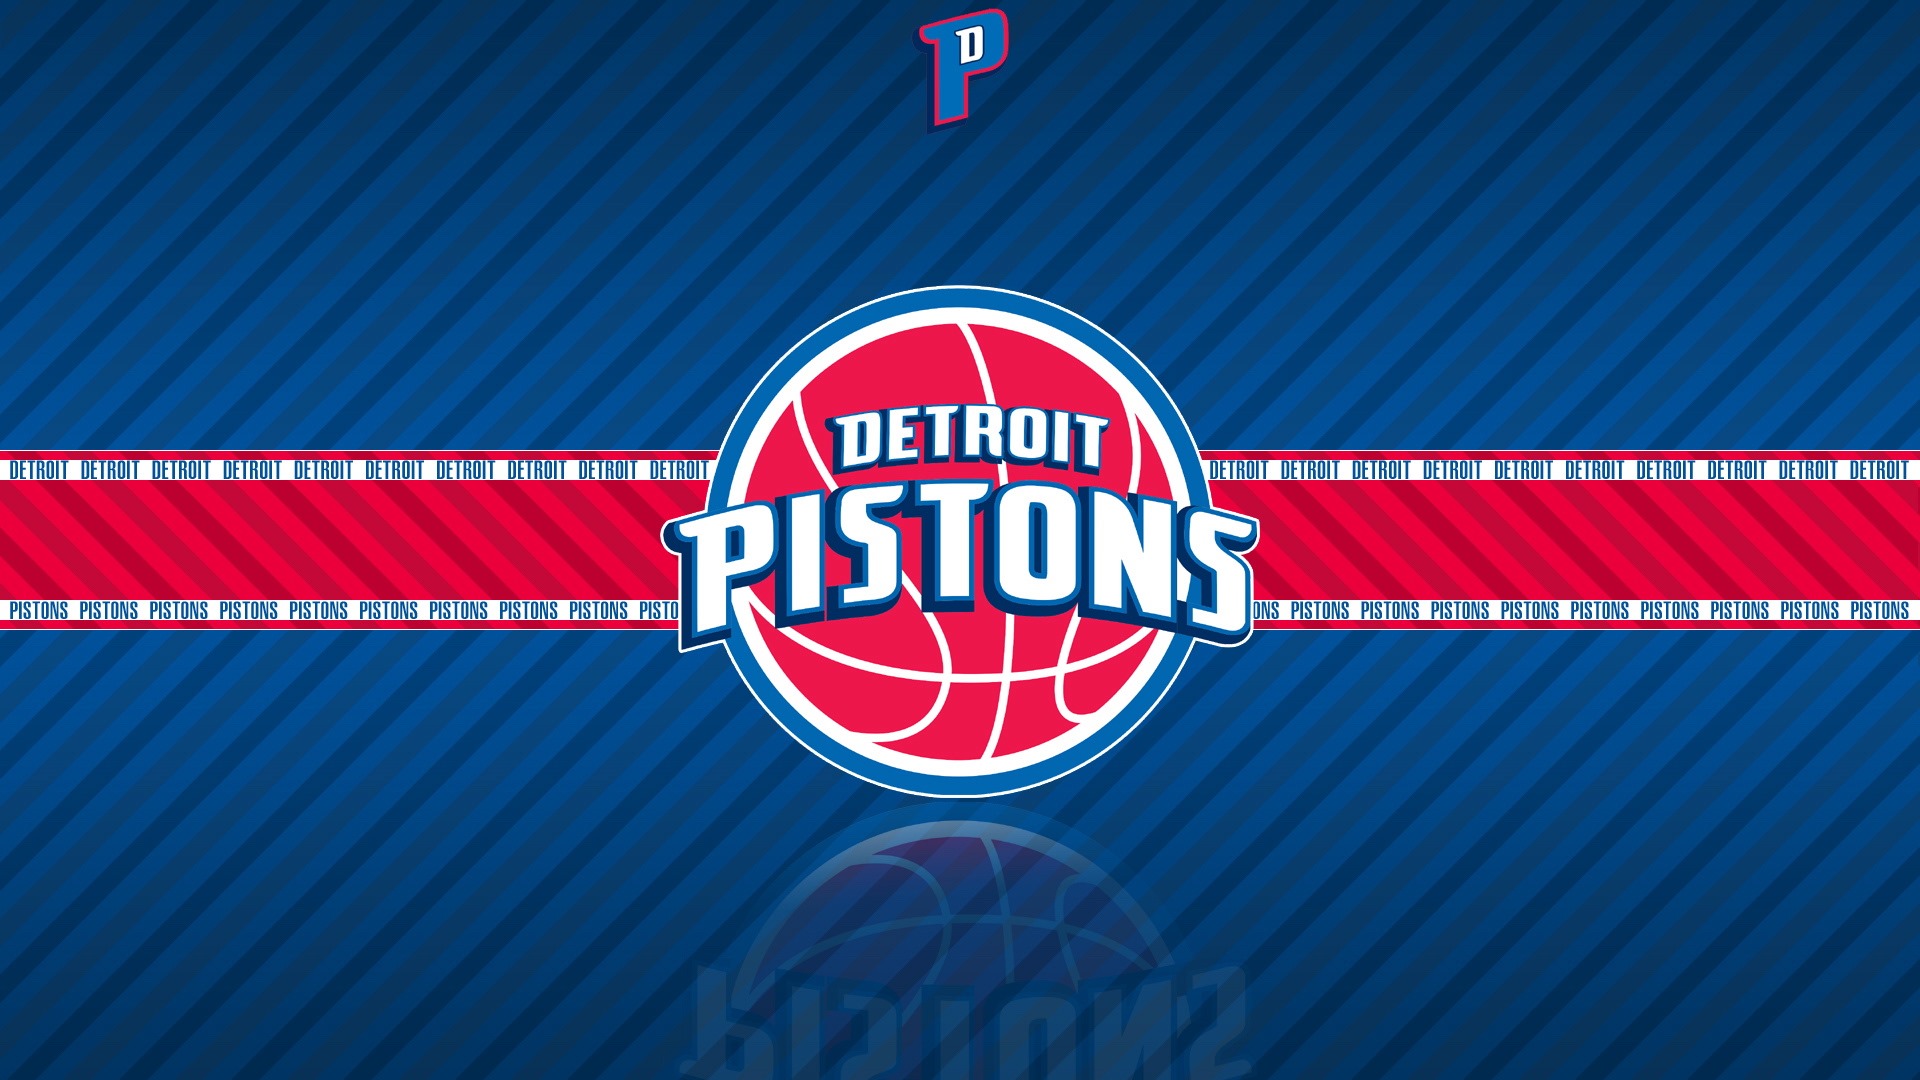 Detroit Pistons: Downloadable Wallpaper